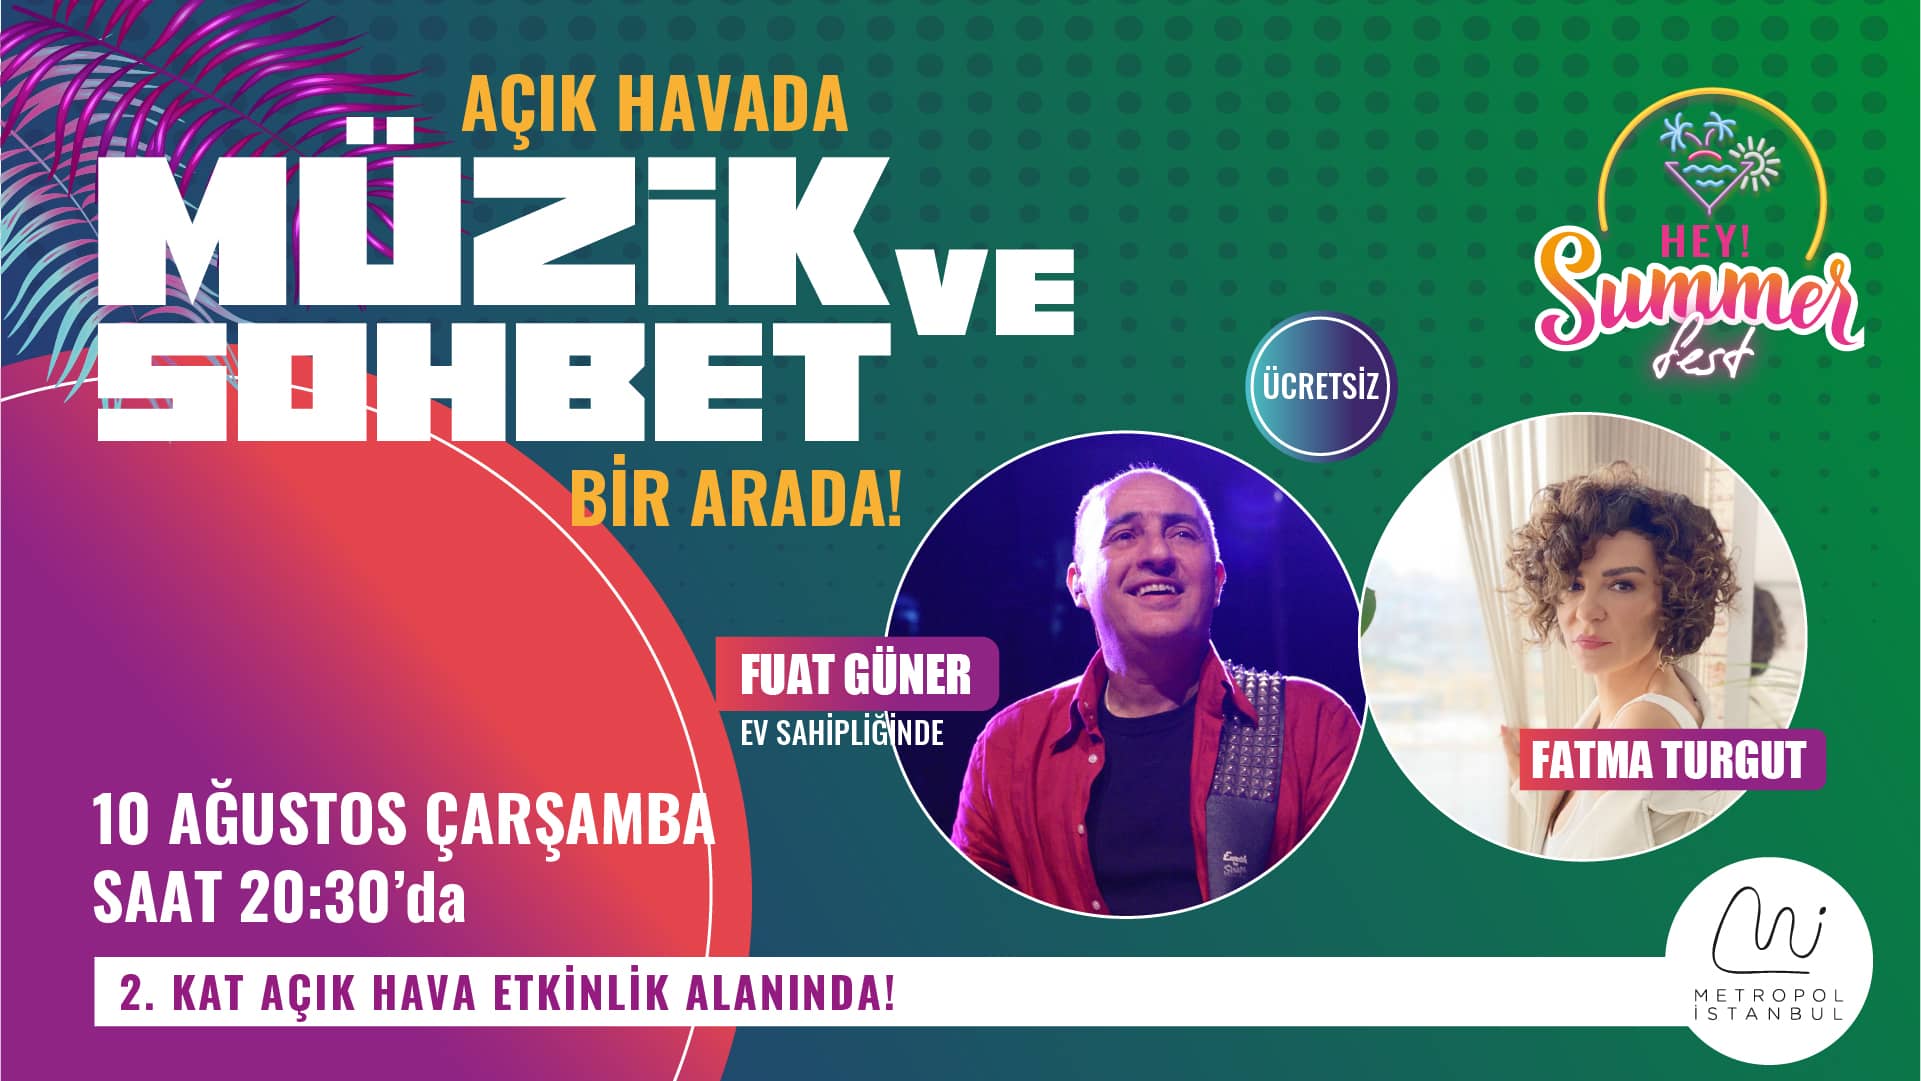 Hey! Summer Fest ile Metropol İstanbul’a kusursuz sesi ile Fatma Turgut geliyoooorrr!